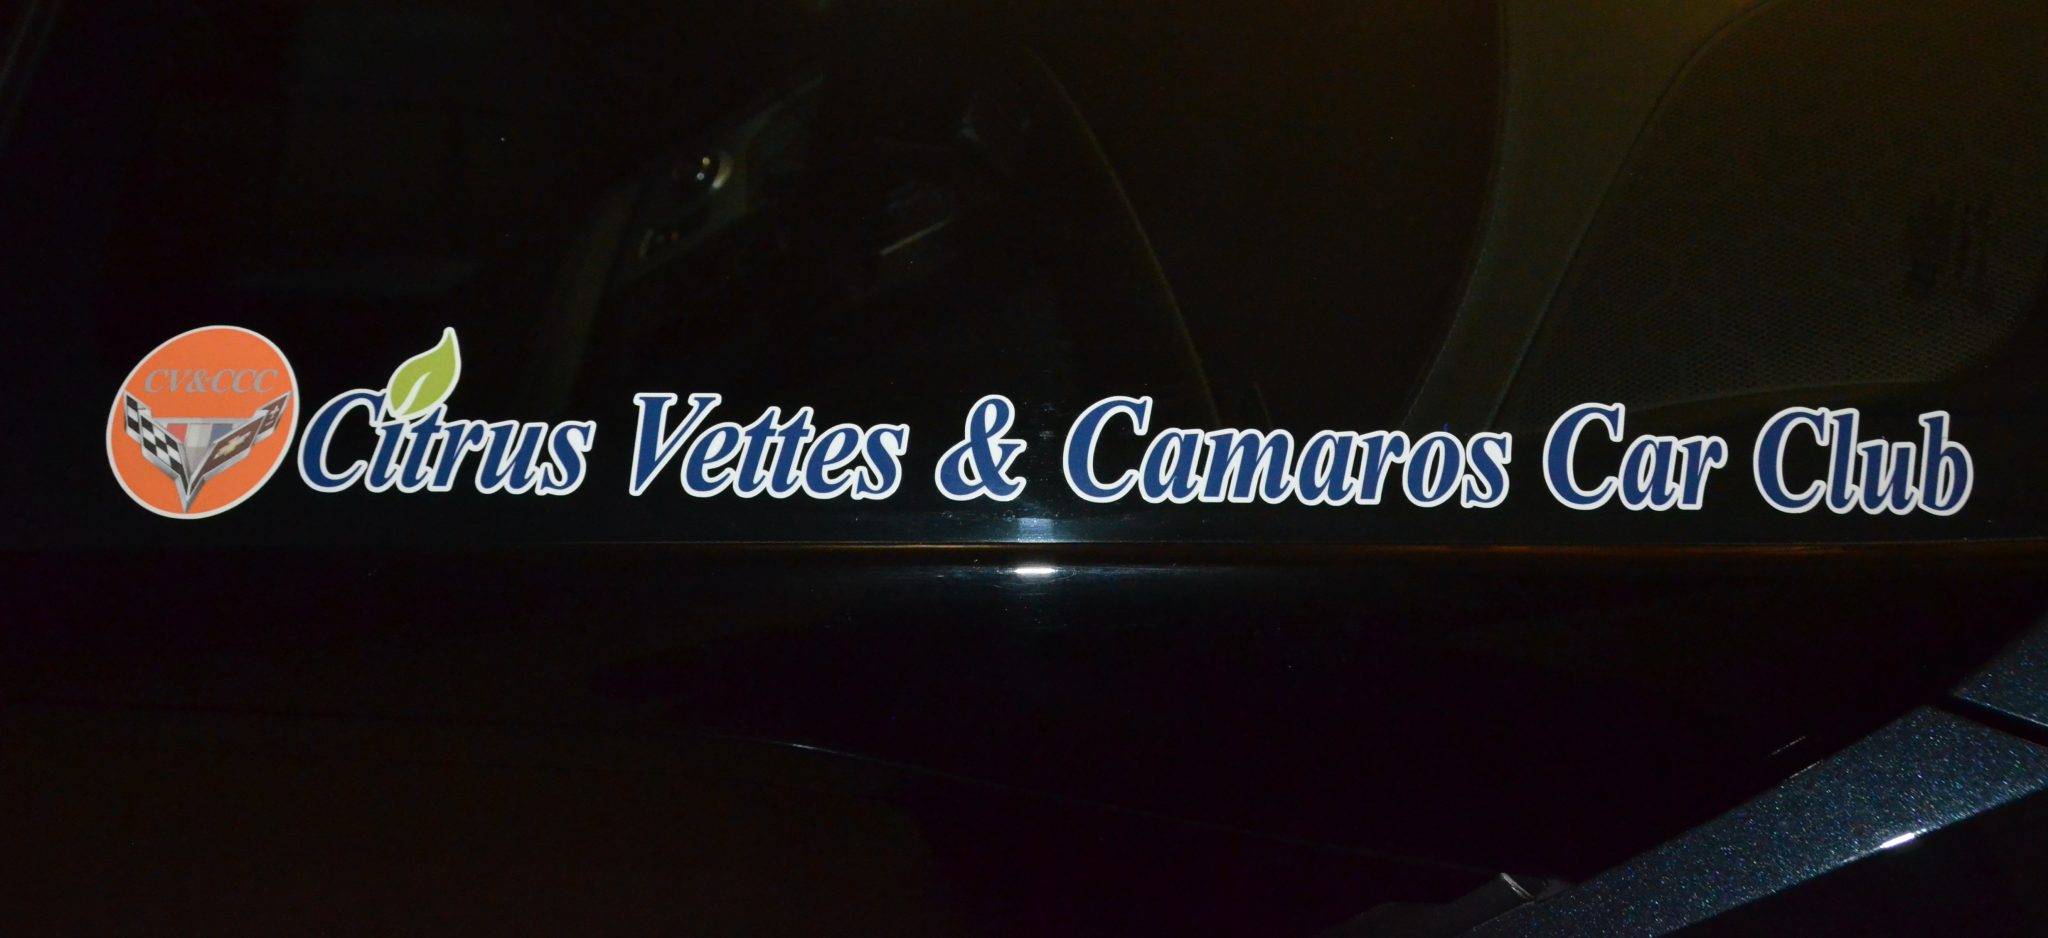 Citrus Vettes & Camaros Car Club Inc. – Corvette & Camaro Car Club of ...